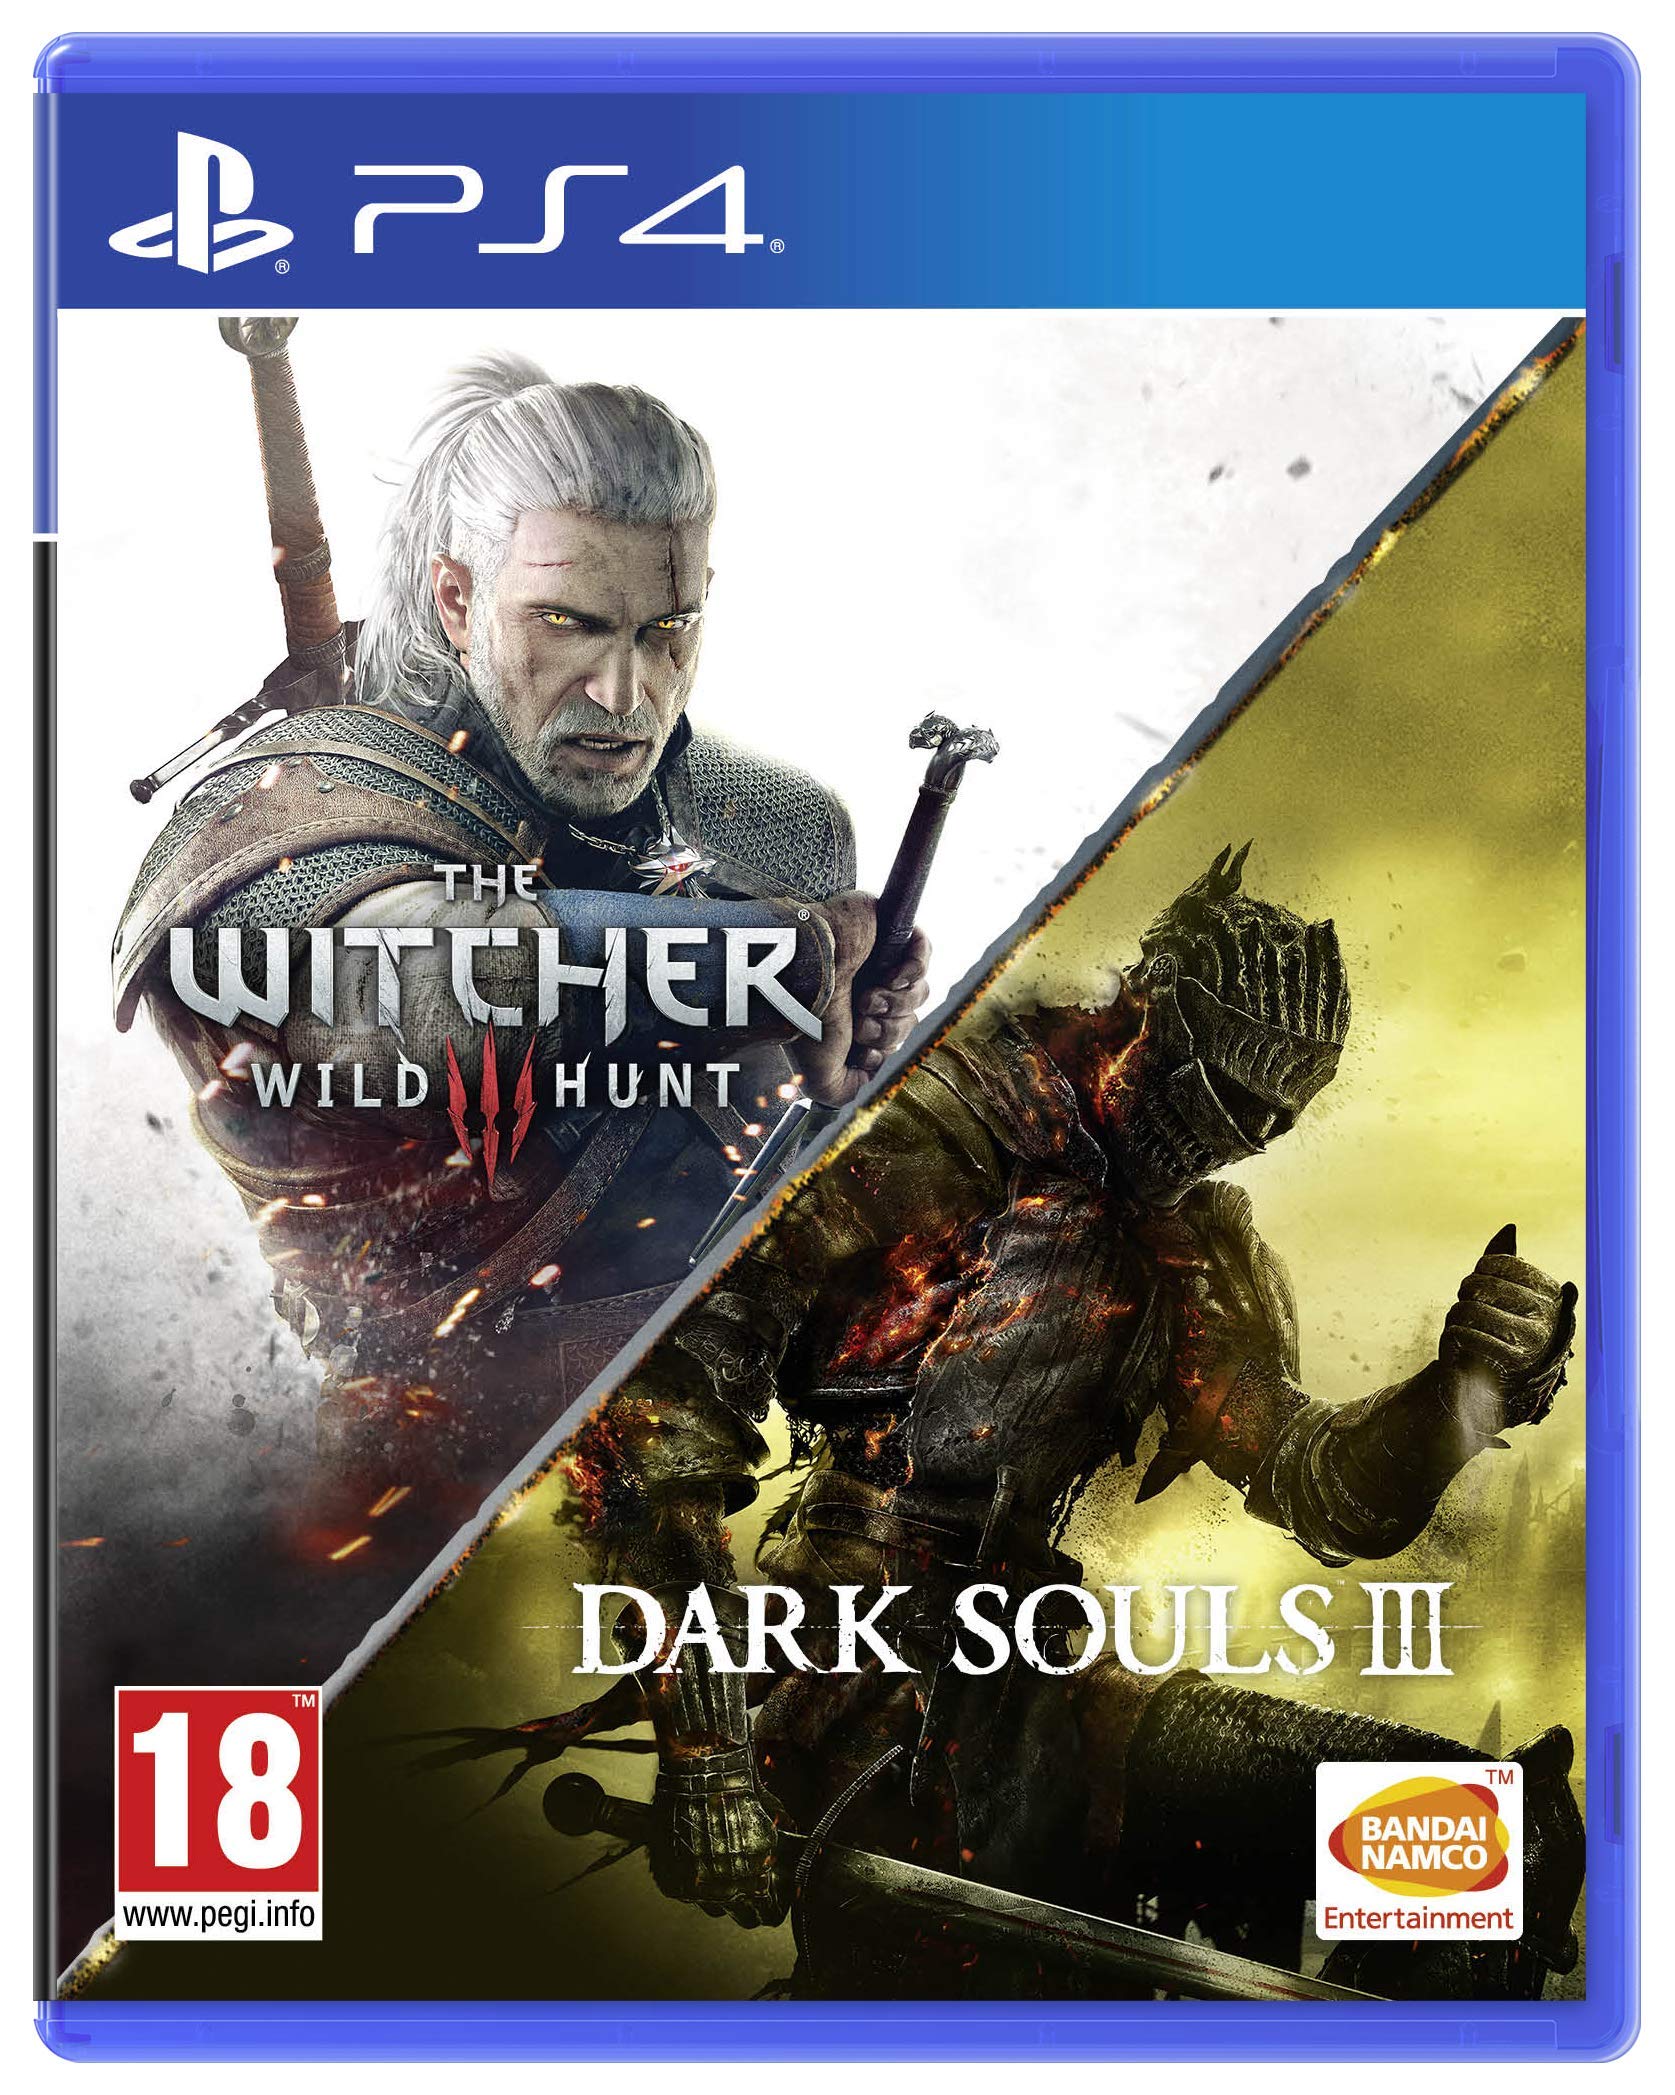 The Witcher 3 Wild Hunt + Dark Souls III Bundle